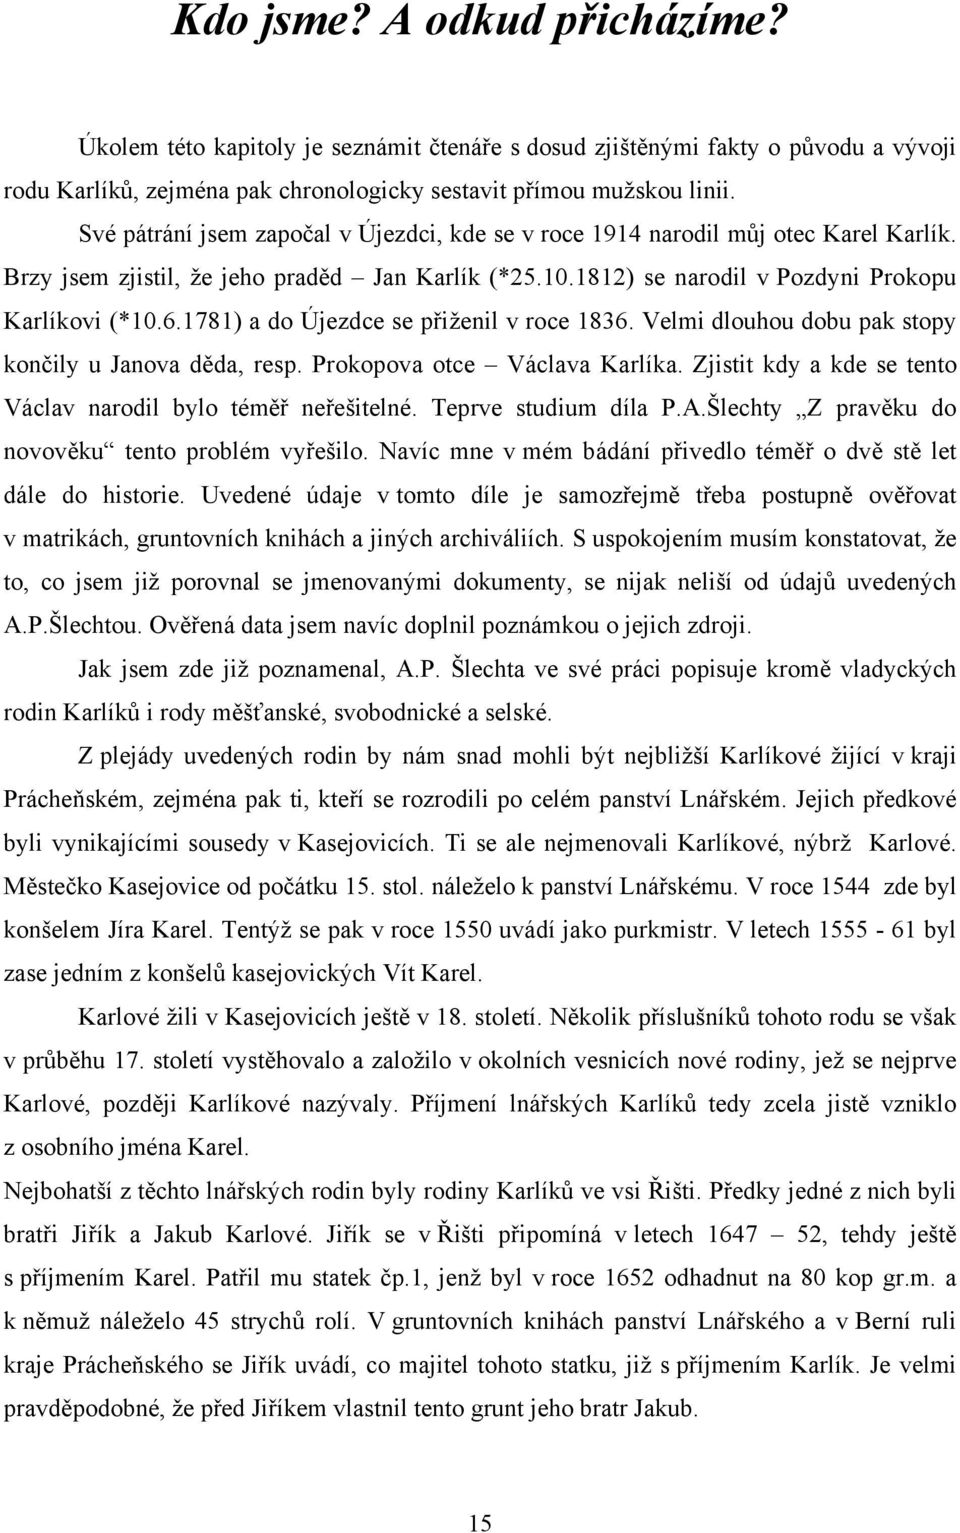 1781) a do Újezdce se přiženil v roce 1836. Velmi dlouhou dobu pak stopy končily u Janova děda, resp. Prokopova otce Václava Karlíka. Zjistit kdy a kde se tento Václav narodil bylo téměř neřešitelné.